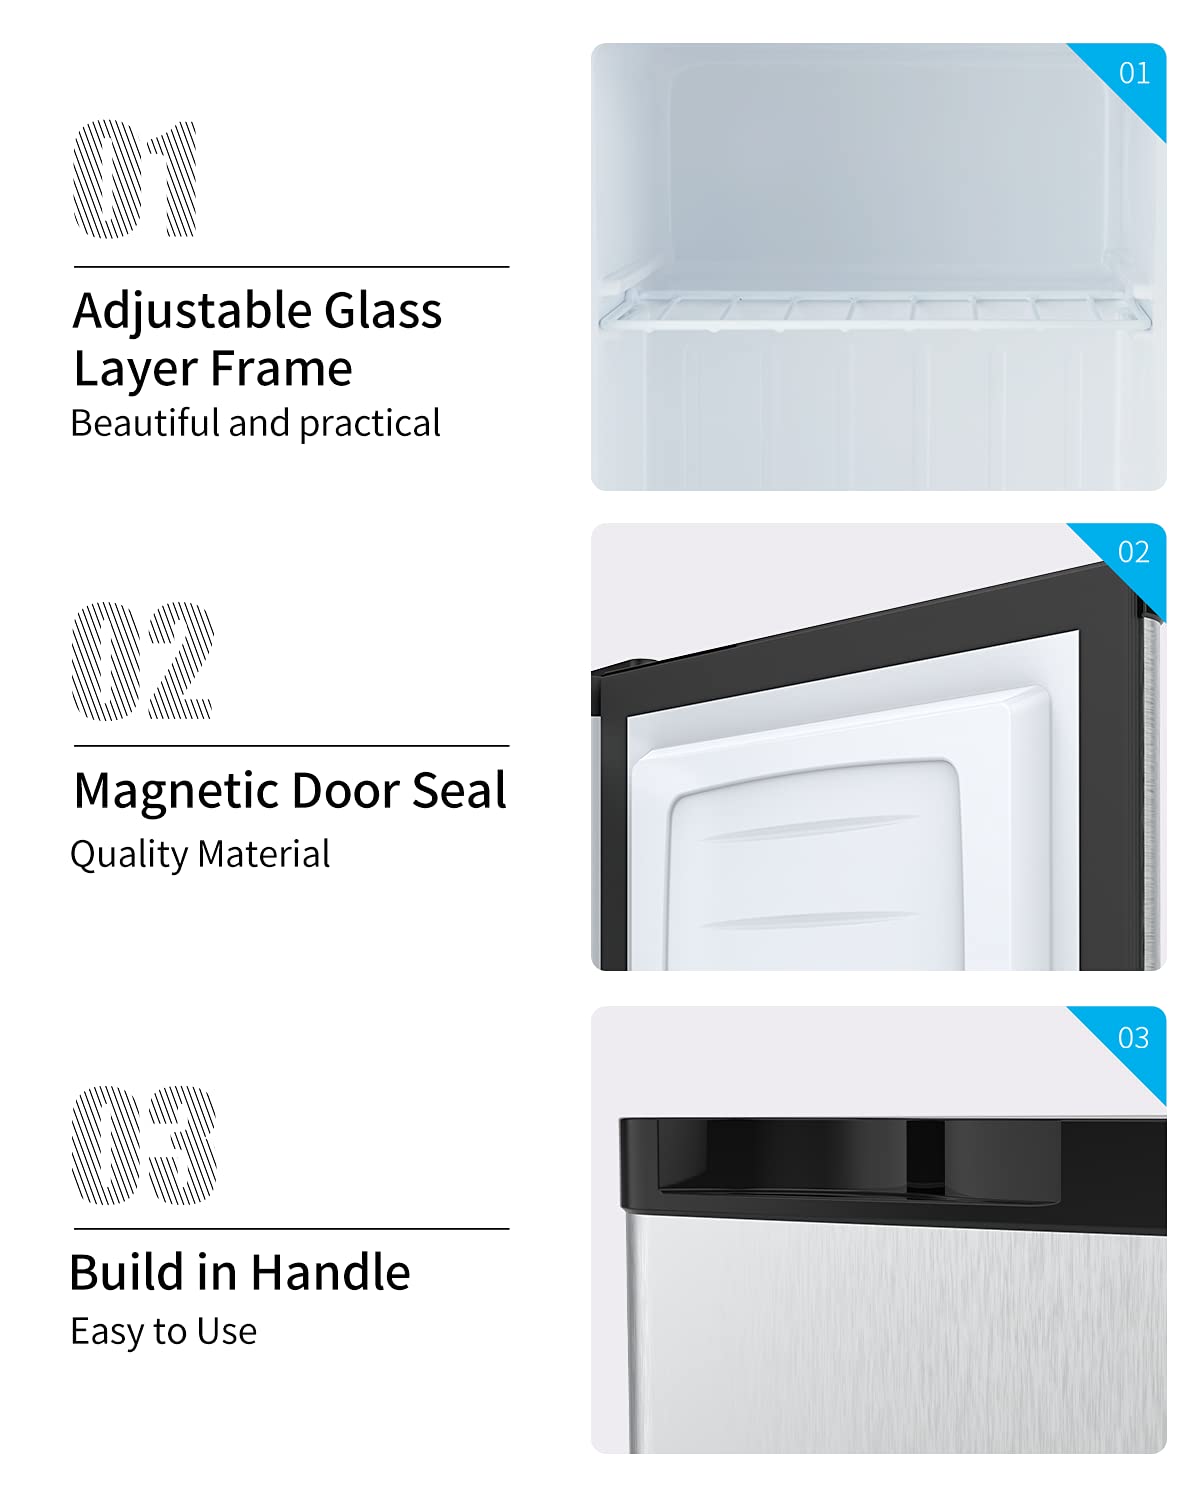 Compact Upright Freezer, Reversible Stainless Steel Door, Single Door, Adjustable Removable (Silver, 1.1 Cu. Ft.)